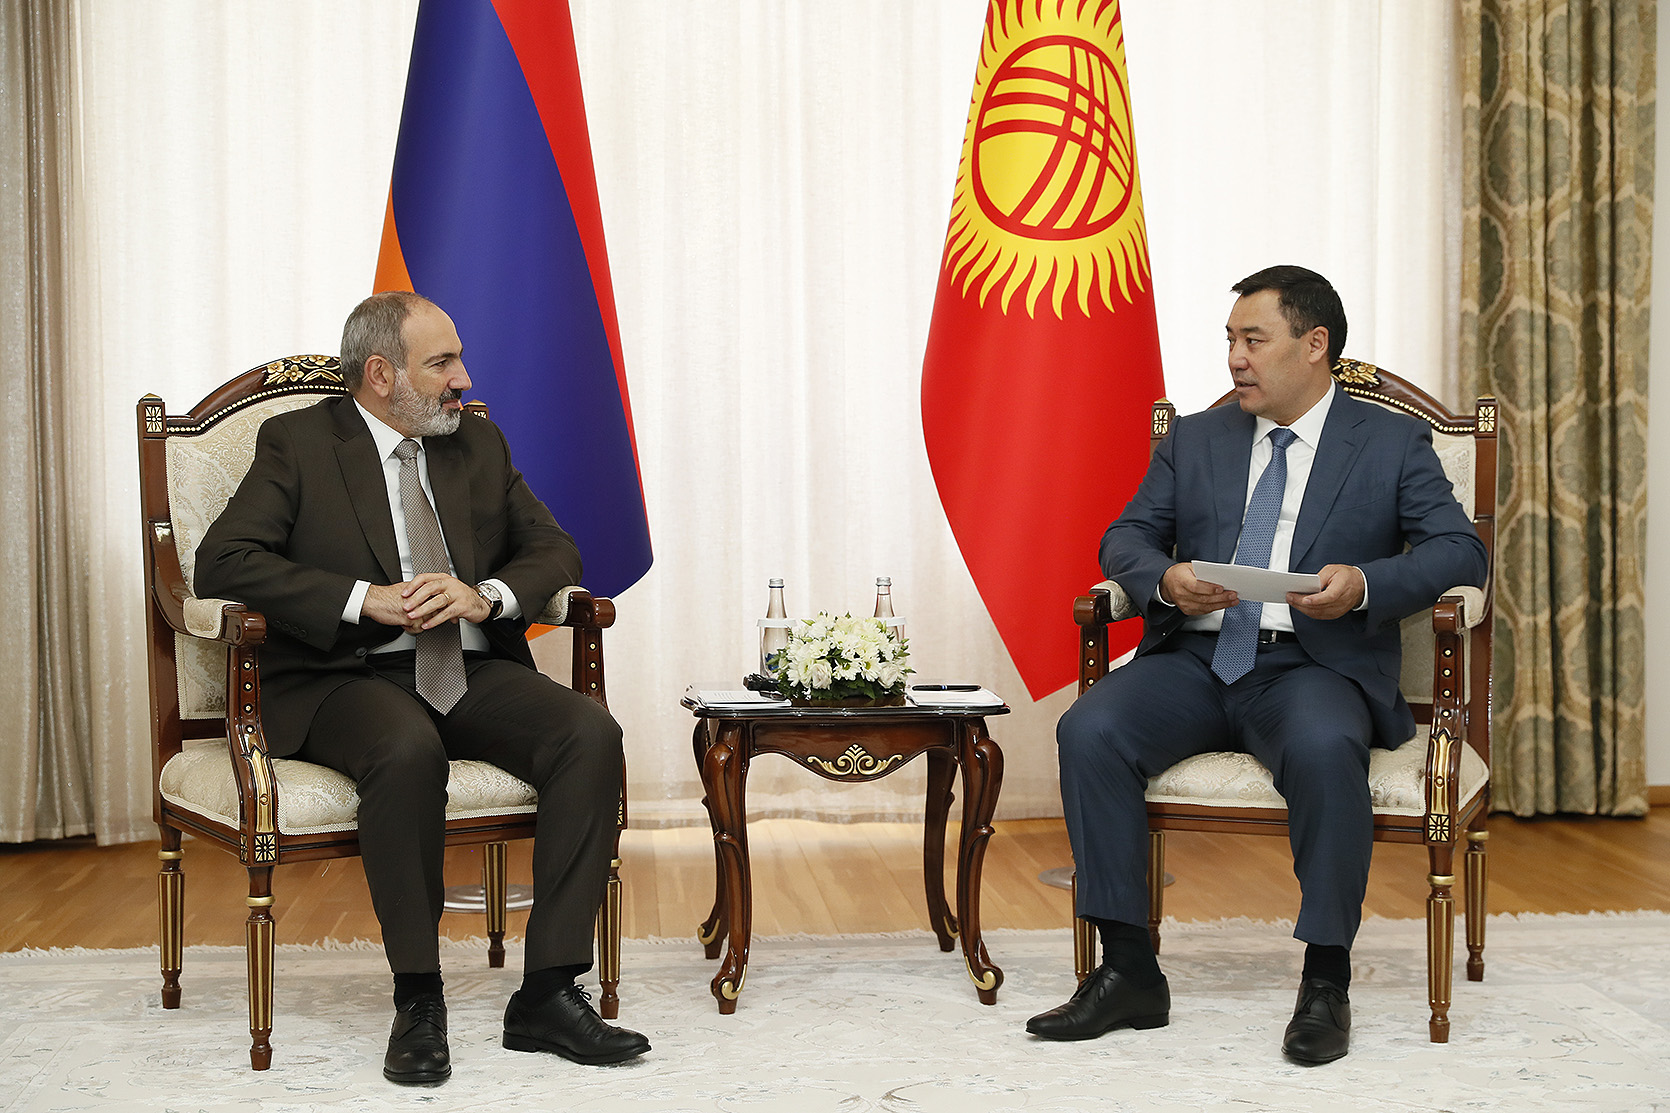 Հայաստանն ու Ղրղզստանը կակտիվացնեն տնտեսական կապերը. վարչապետը հանդիպում է ունեցել Ղրղզստանի նախագահի հետ